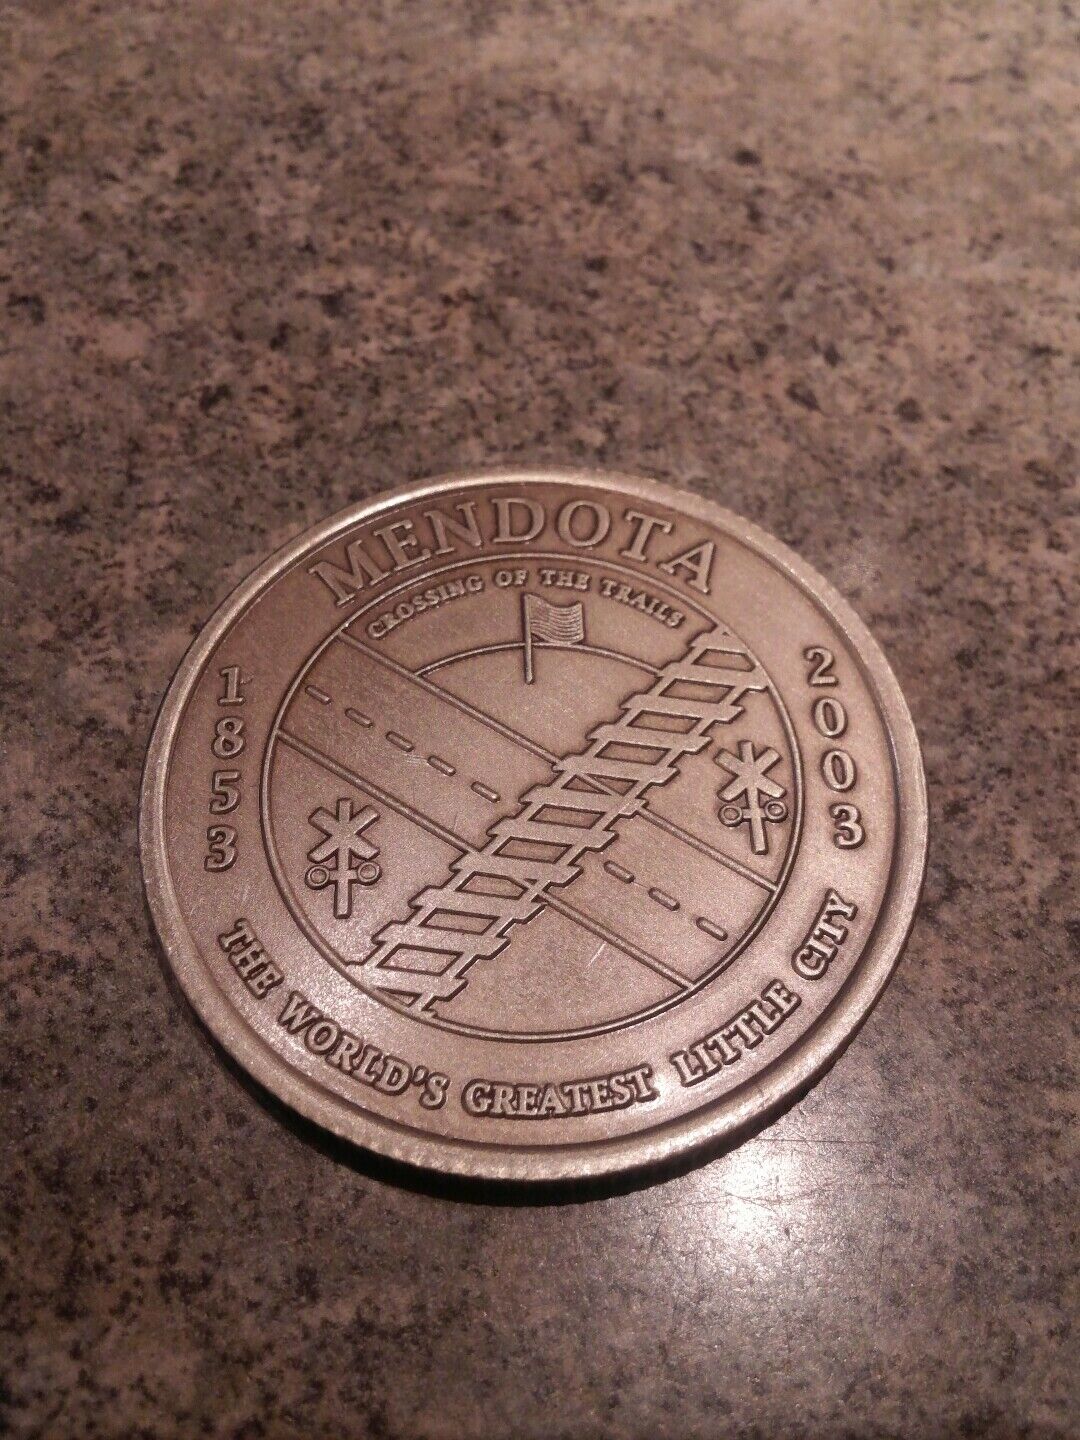 Mendota,IL. 1853-2003 Sesquicentennial Coin Mendota,IL.